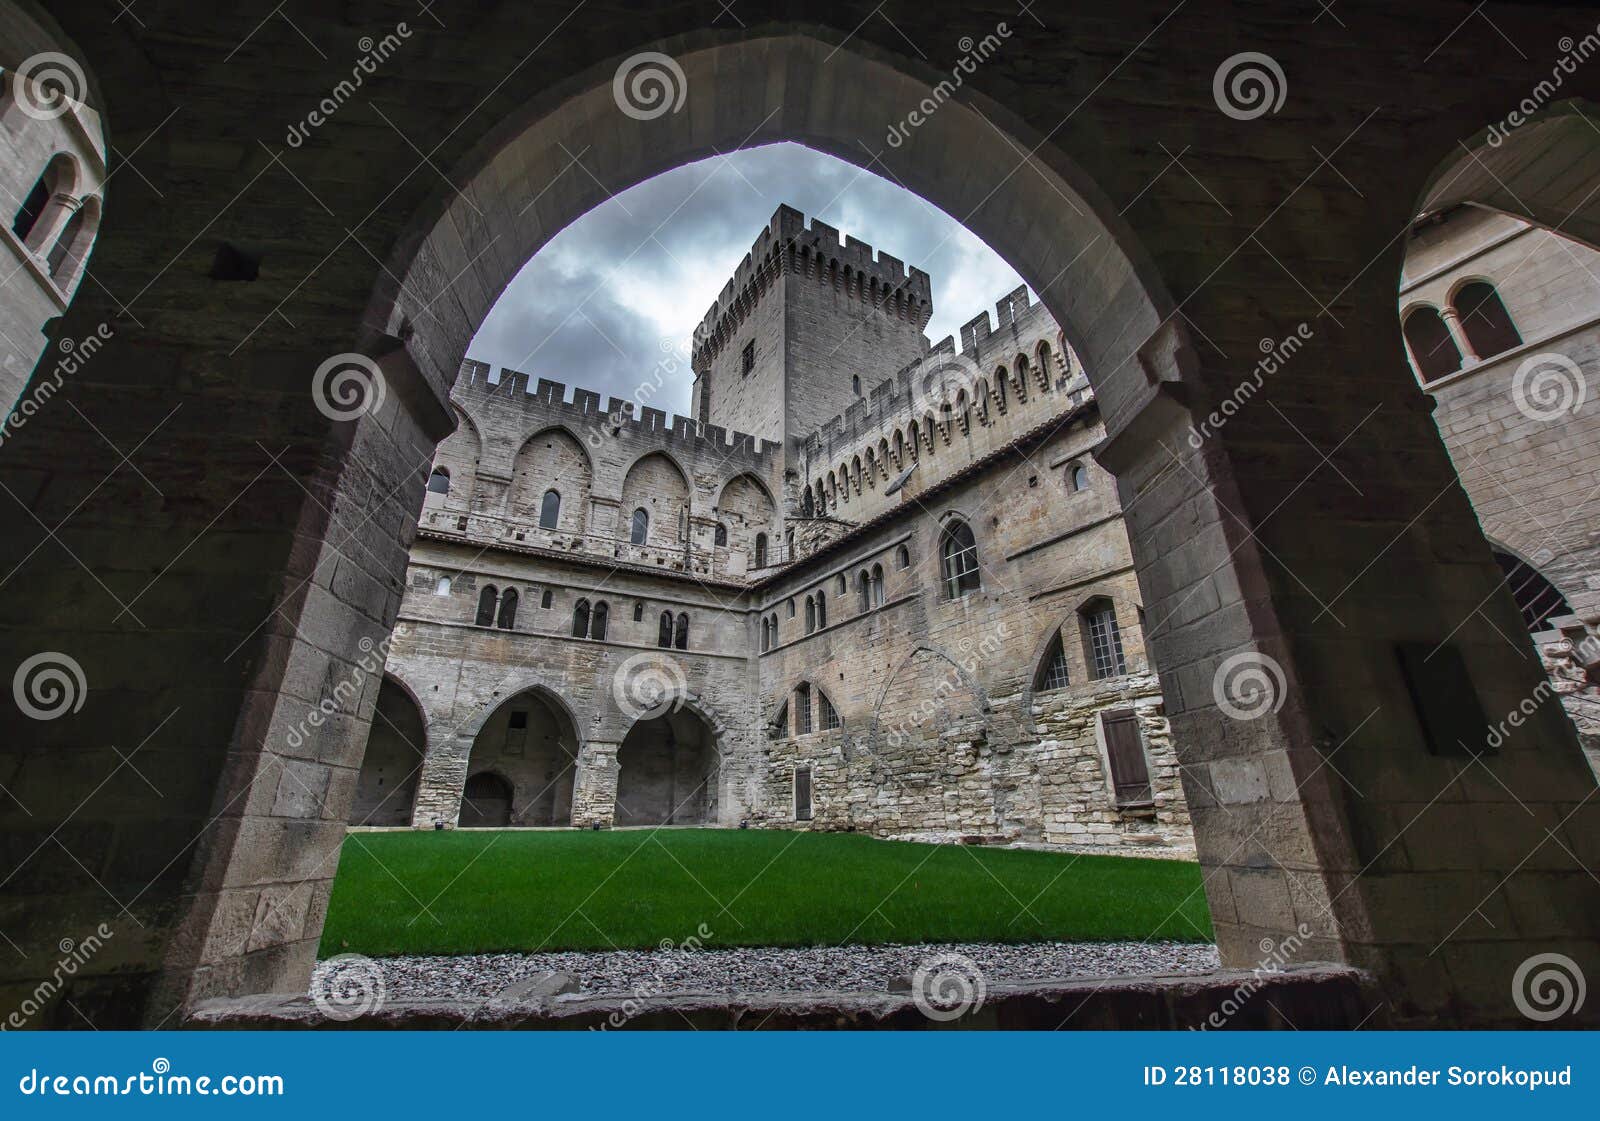 medieval castle of popes in avignon